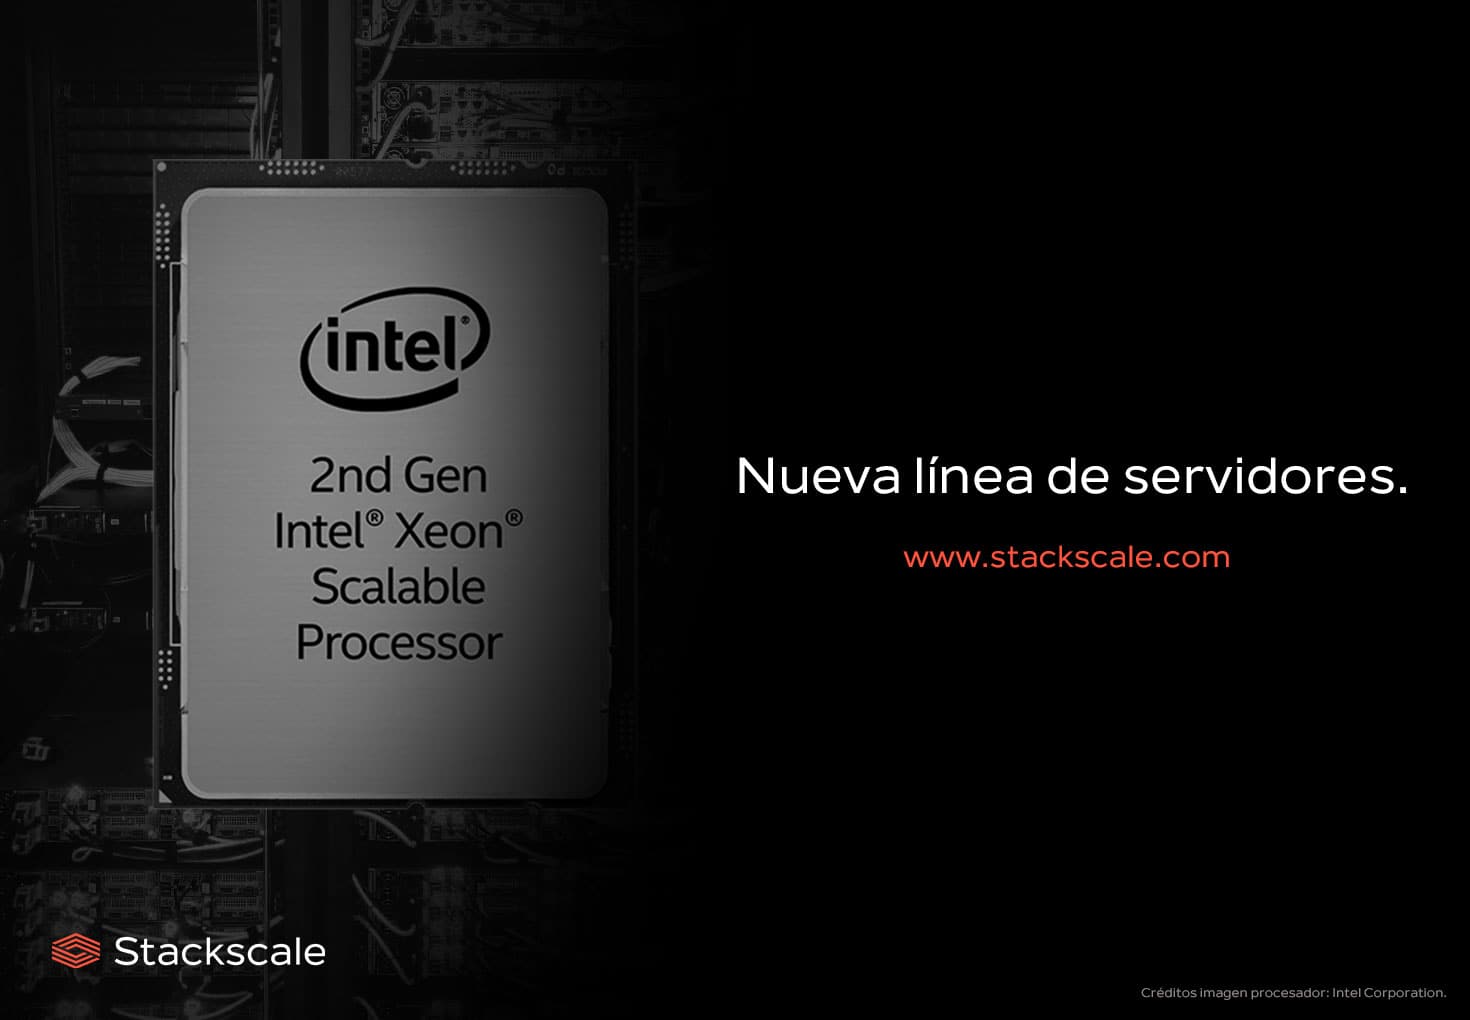 Nueva línea de nodos de Stackscale con procesadores Intel Xeon Scalable de 2ª generación